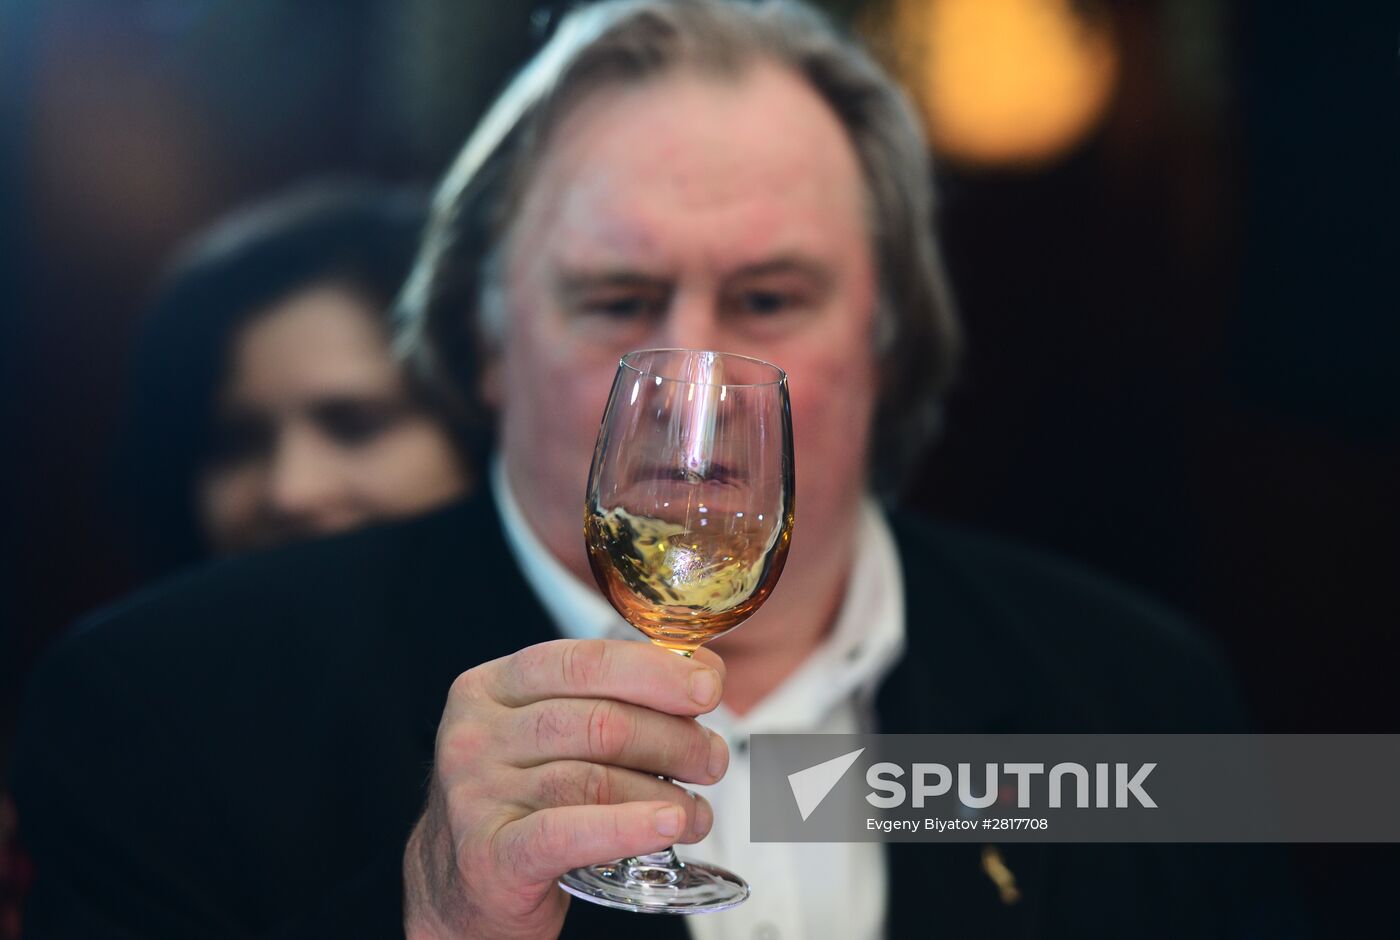 Tasting Crimean wines with Gerard Depardieu